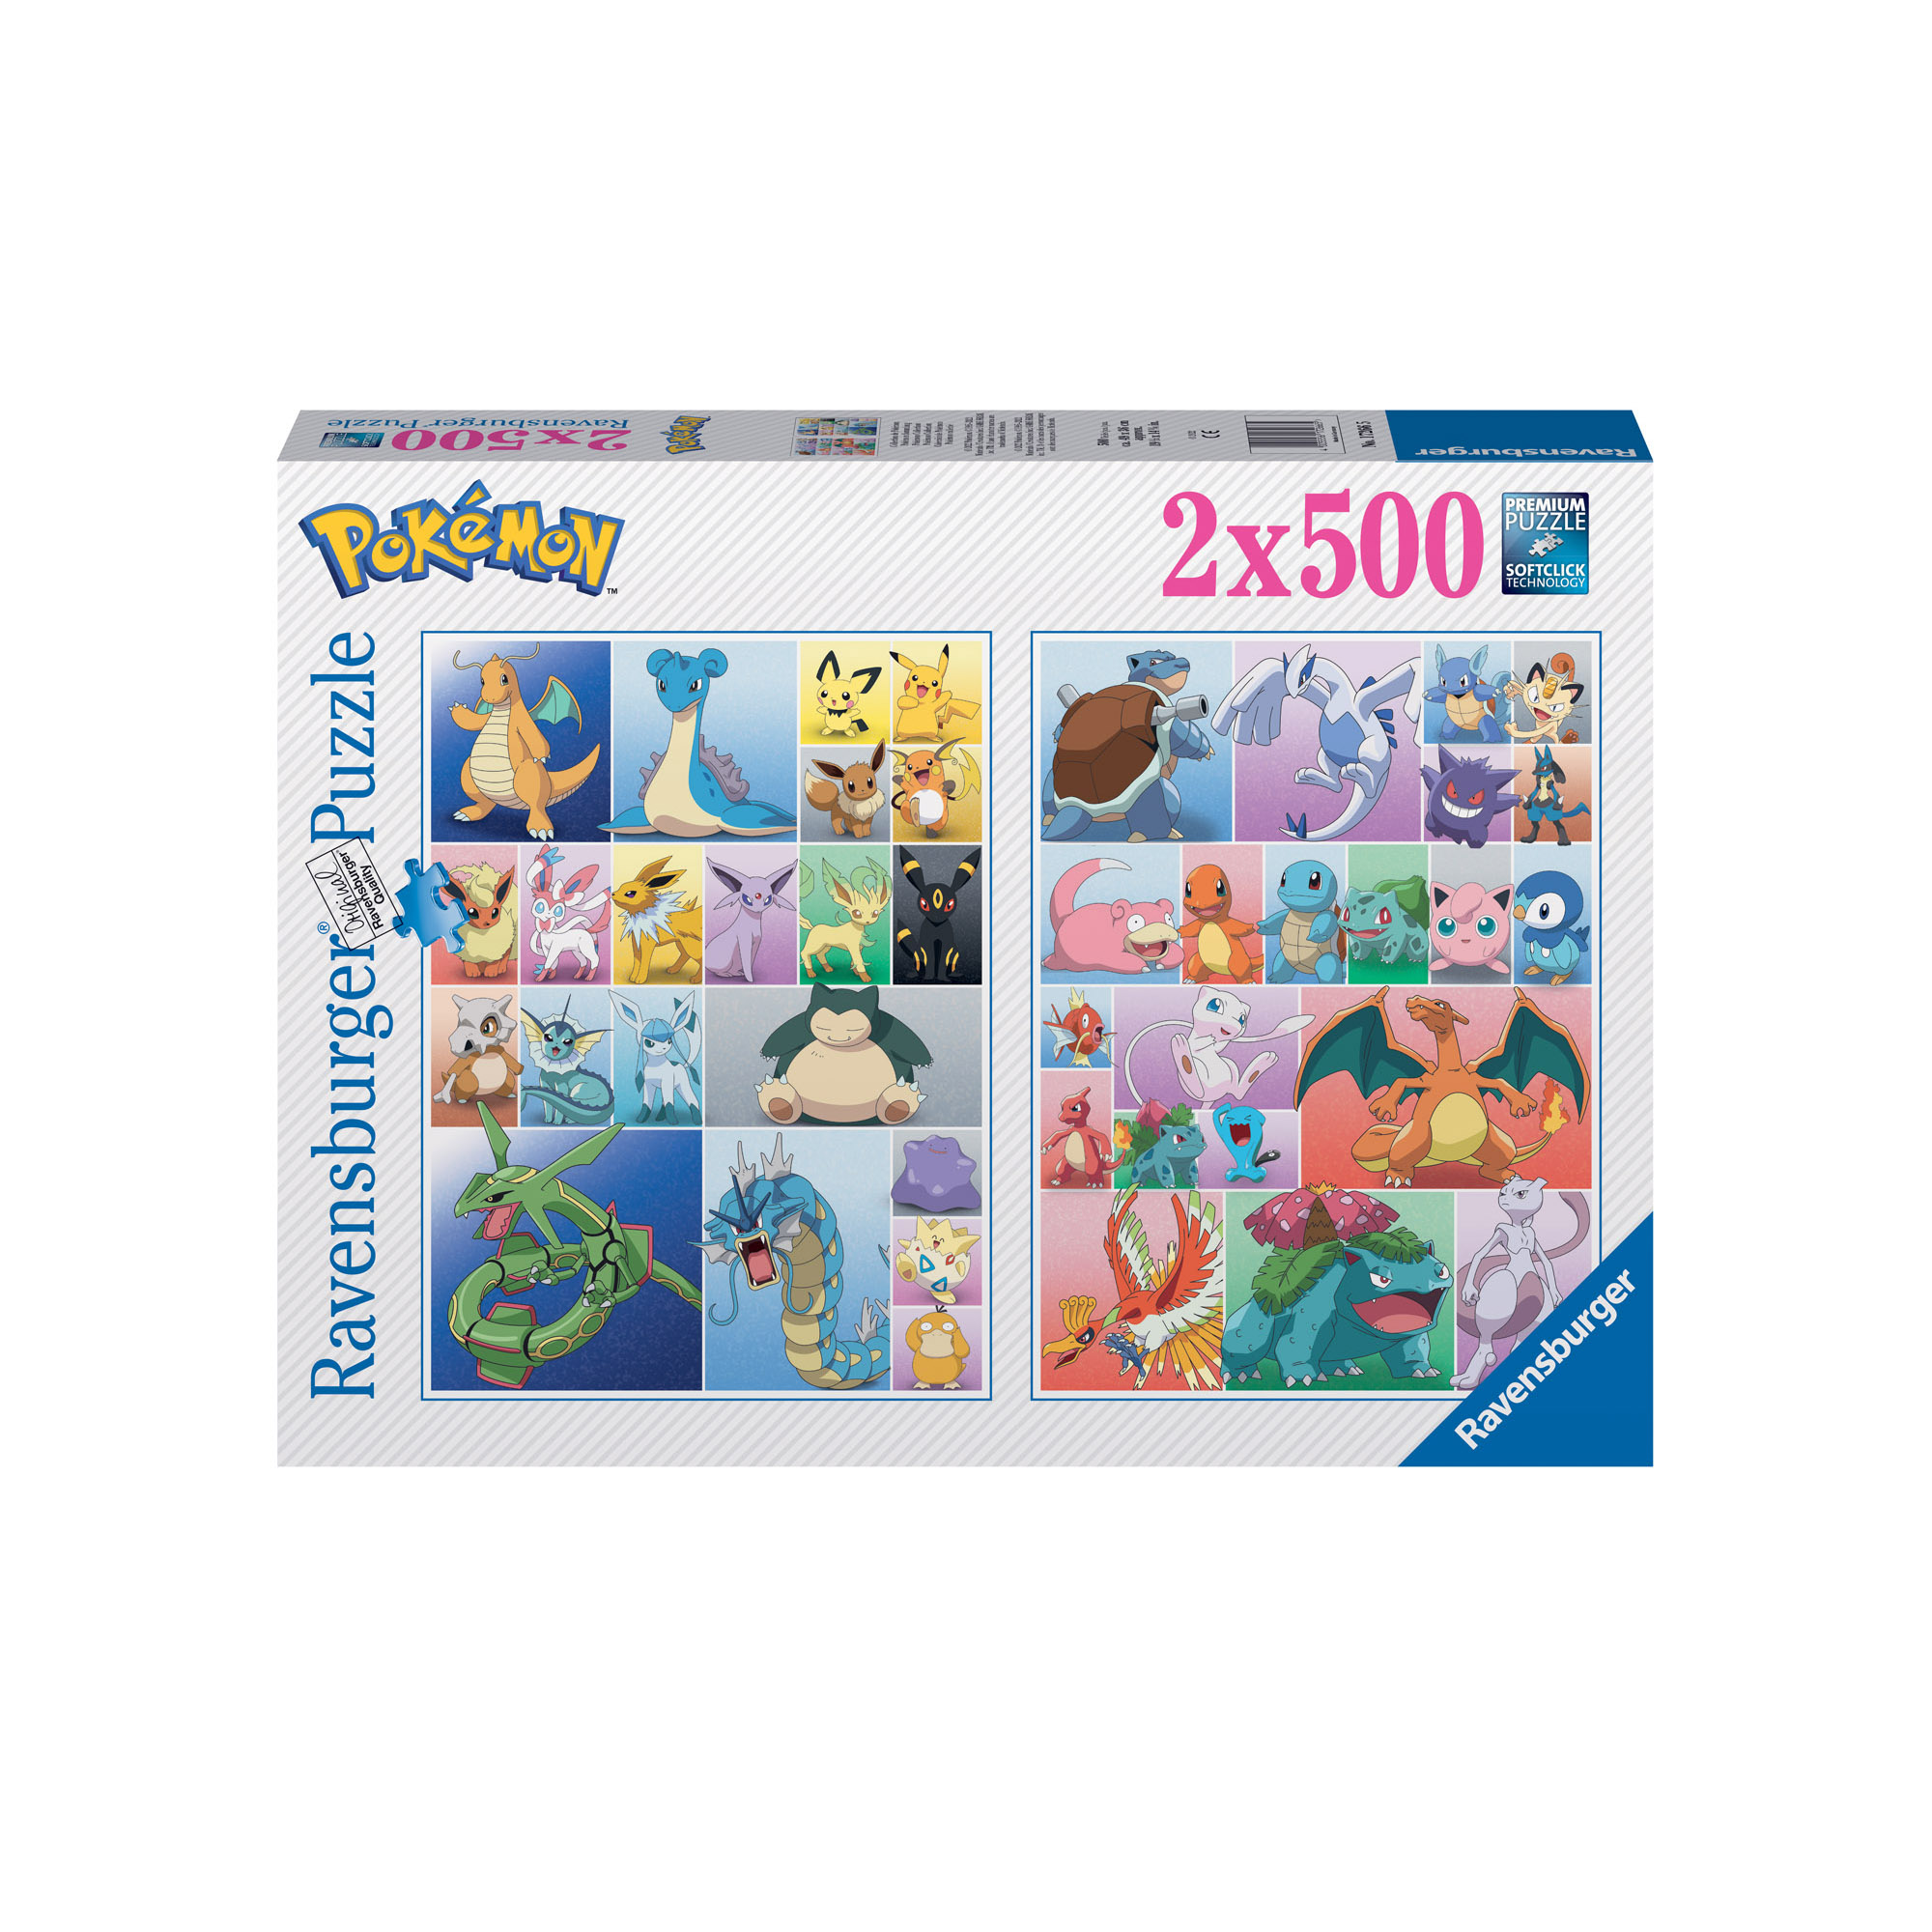 Ravensburger - puzzle pokémon, 2x500 pezzi, puzzle adulti - POKEMON, RAVENSBURGER